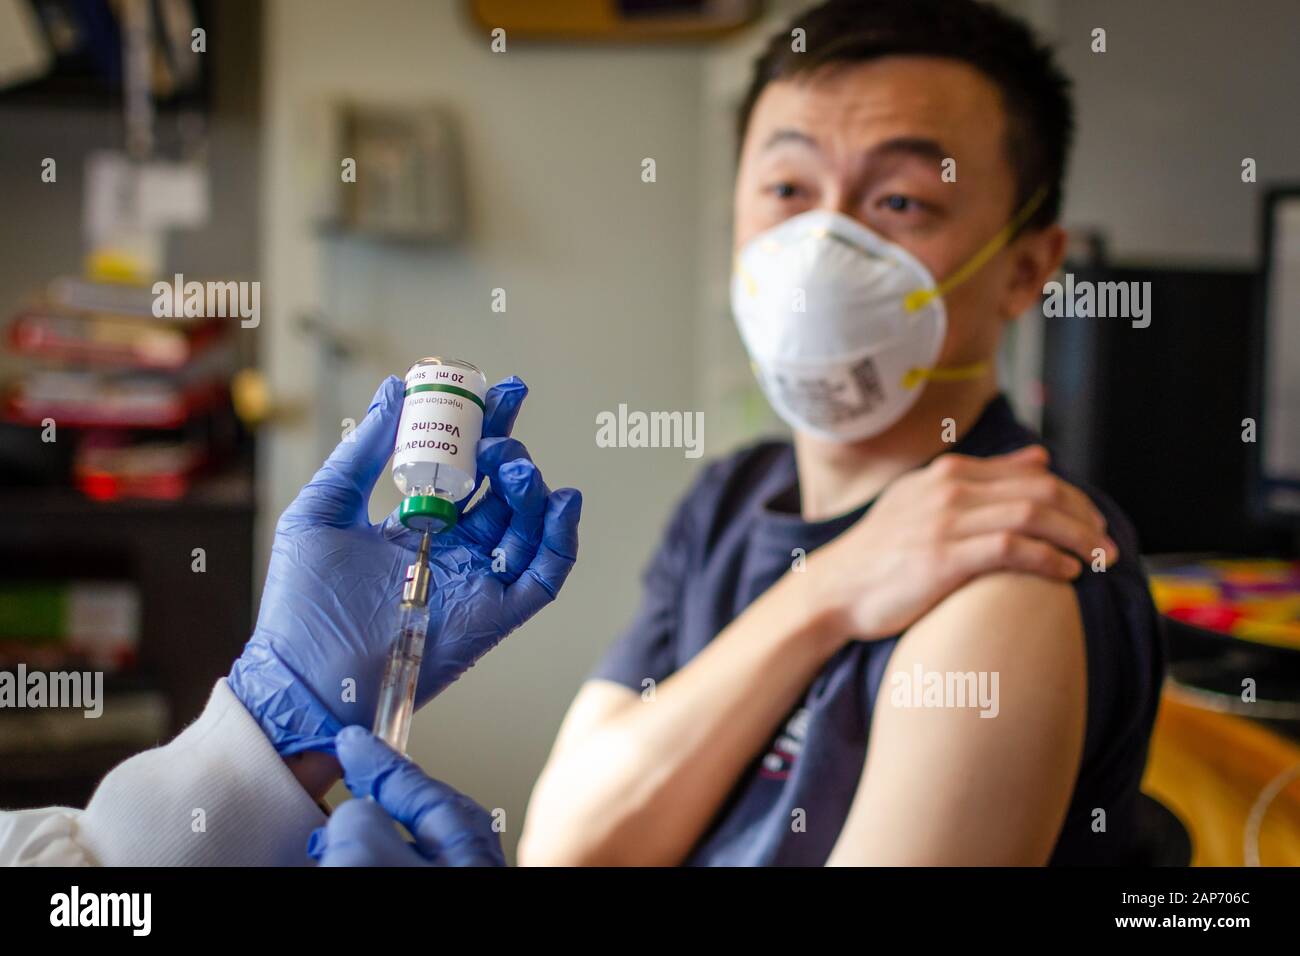 Chinese male receiving coronavirus vaccine in health clinic Stock Photo